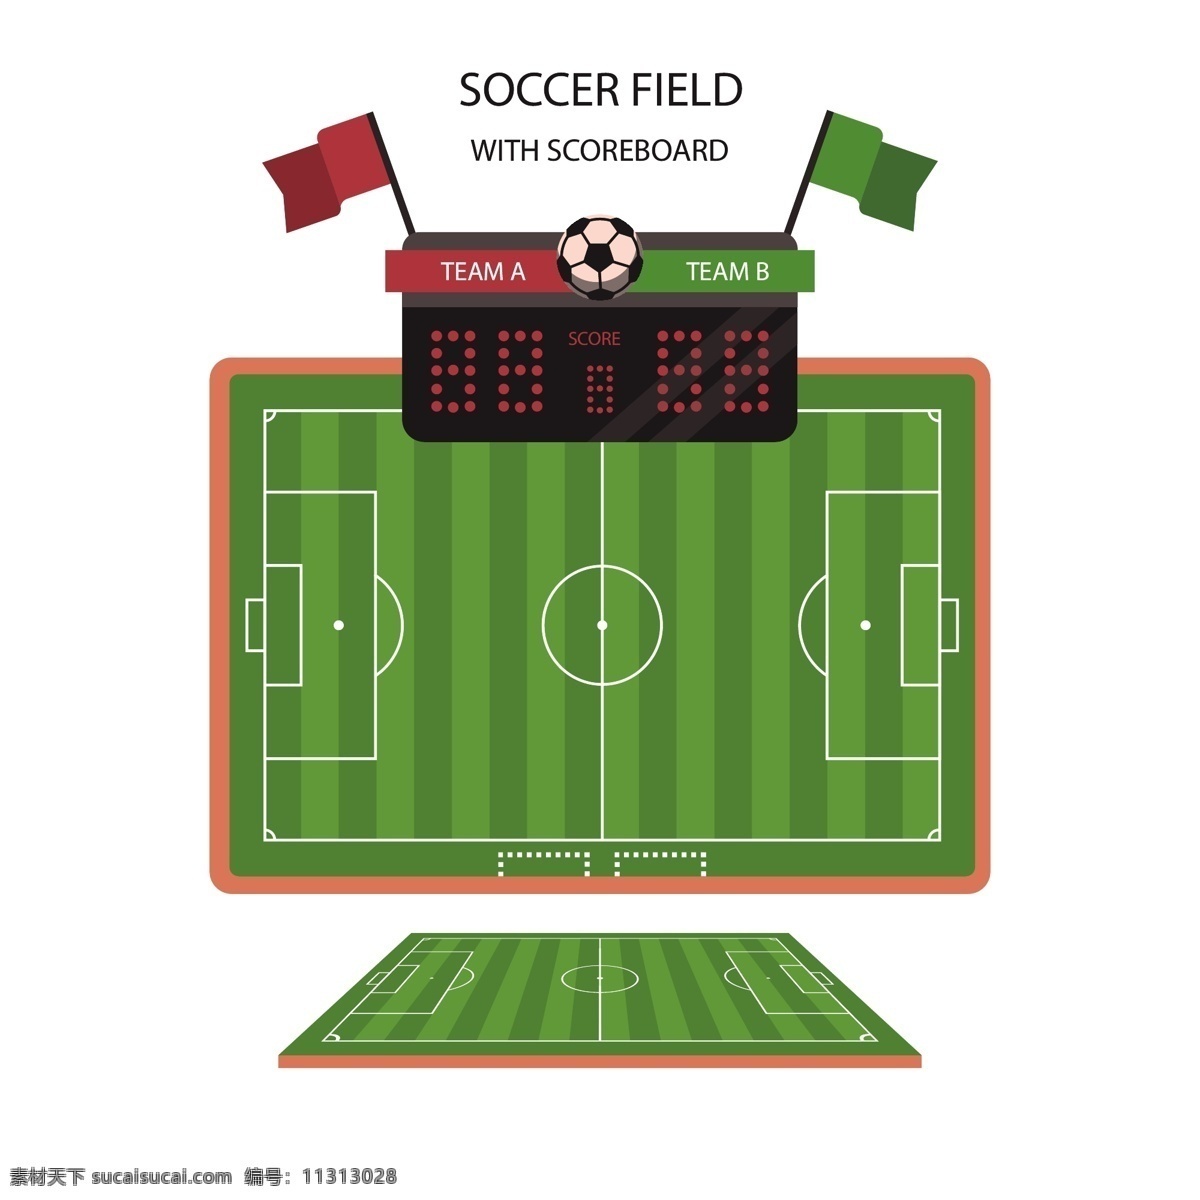 绿色 世界杯 足球场 比分 矢量素材 卡通 足球 俄罗斯 欧洲杯 比赛 体育 竞赛